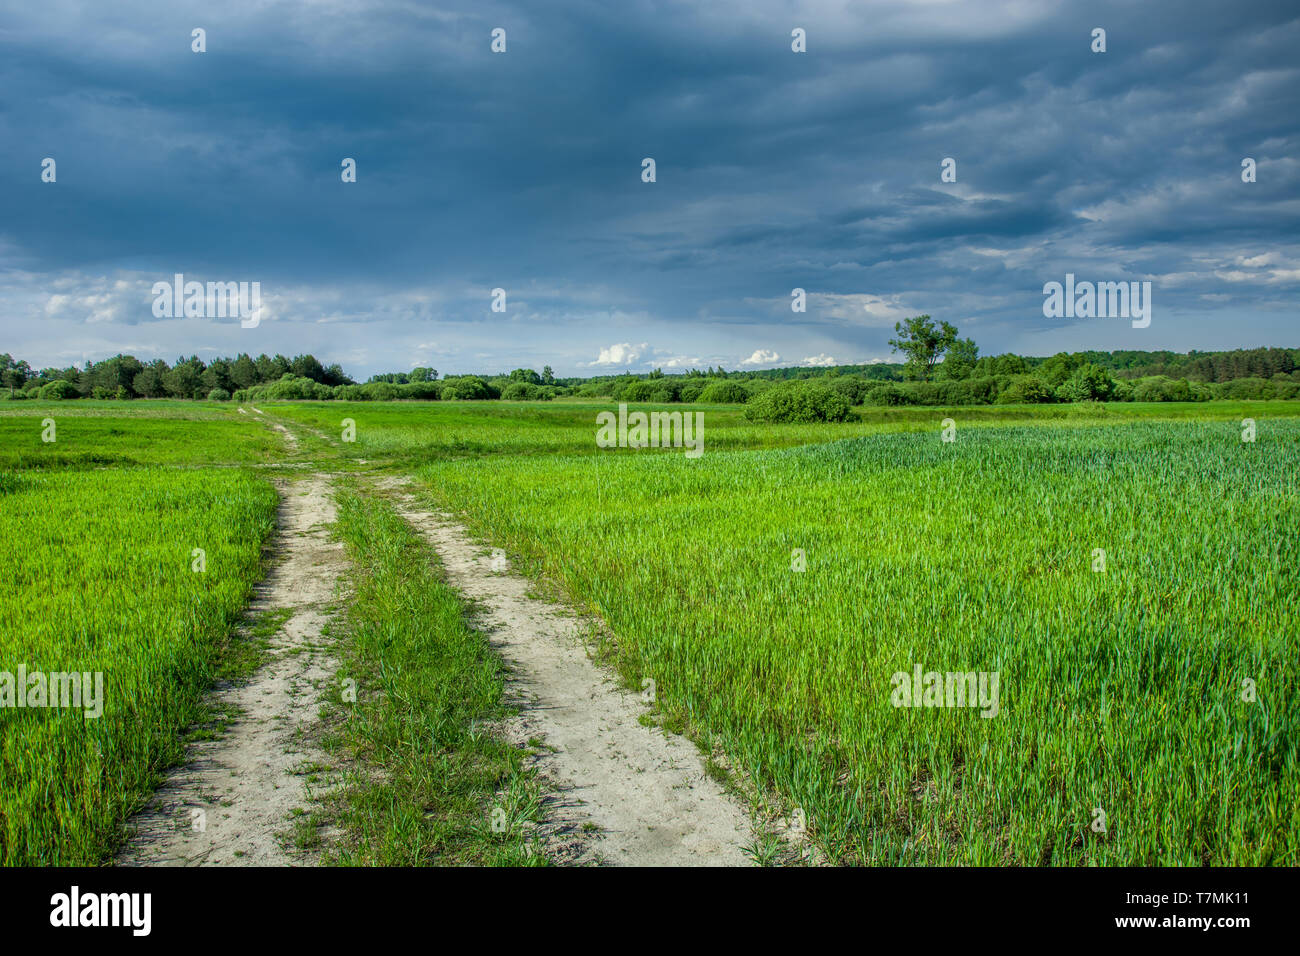 Straße durch grüne Feld mit Getreide, Bäume am Horizont und dunkle Wolken am blauen Himmel - Wólka Czułczycka, Lubelskie, Polen Stockfoto